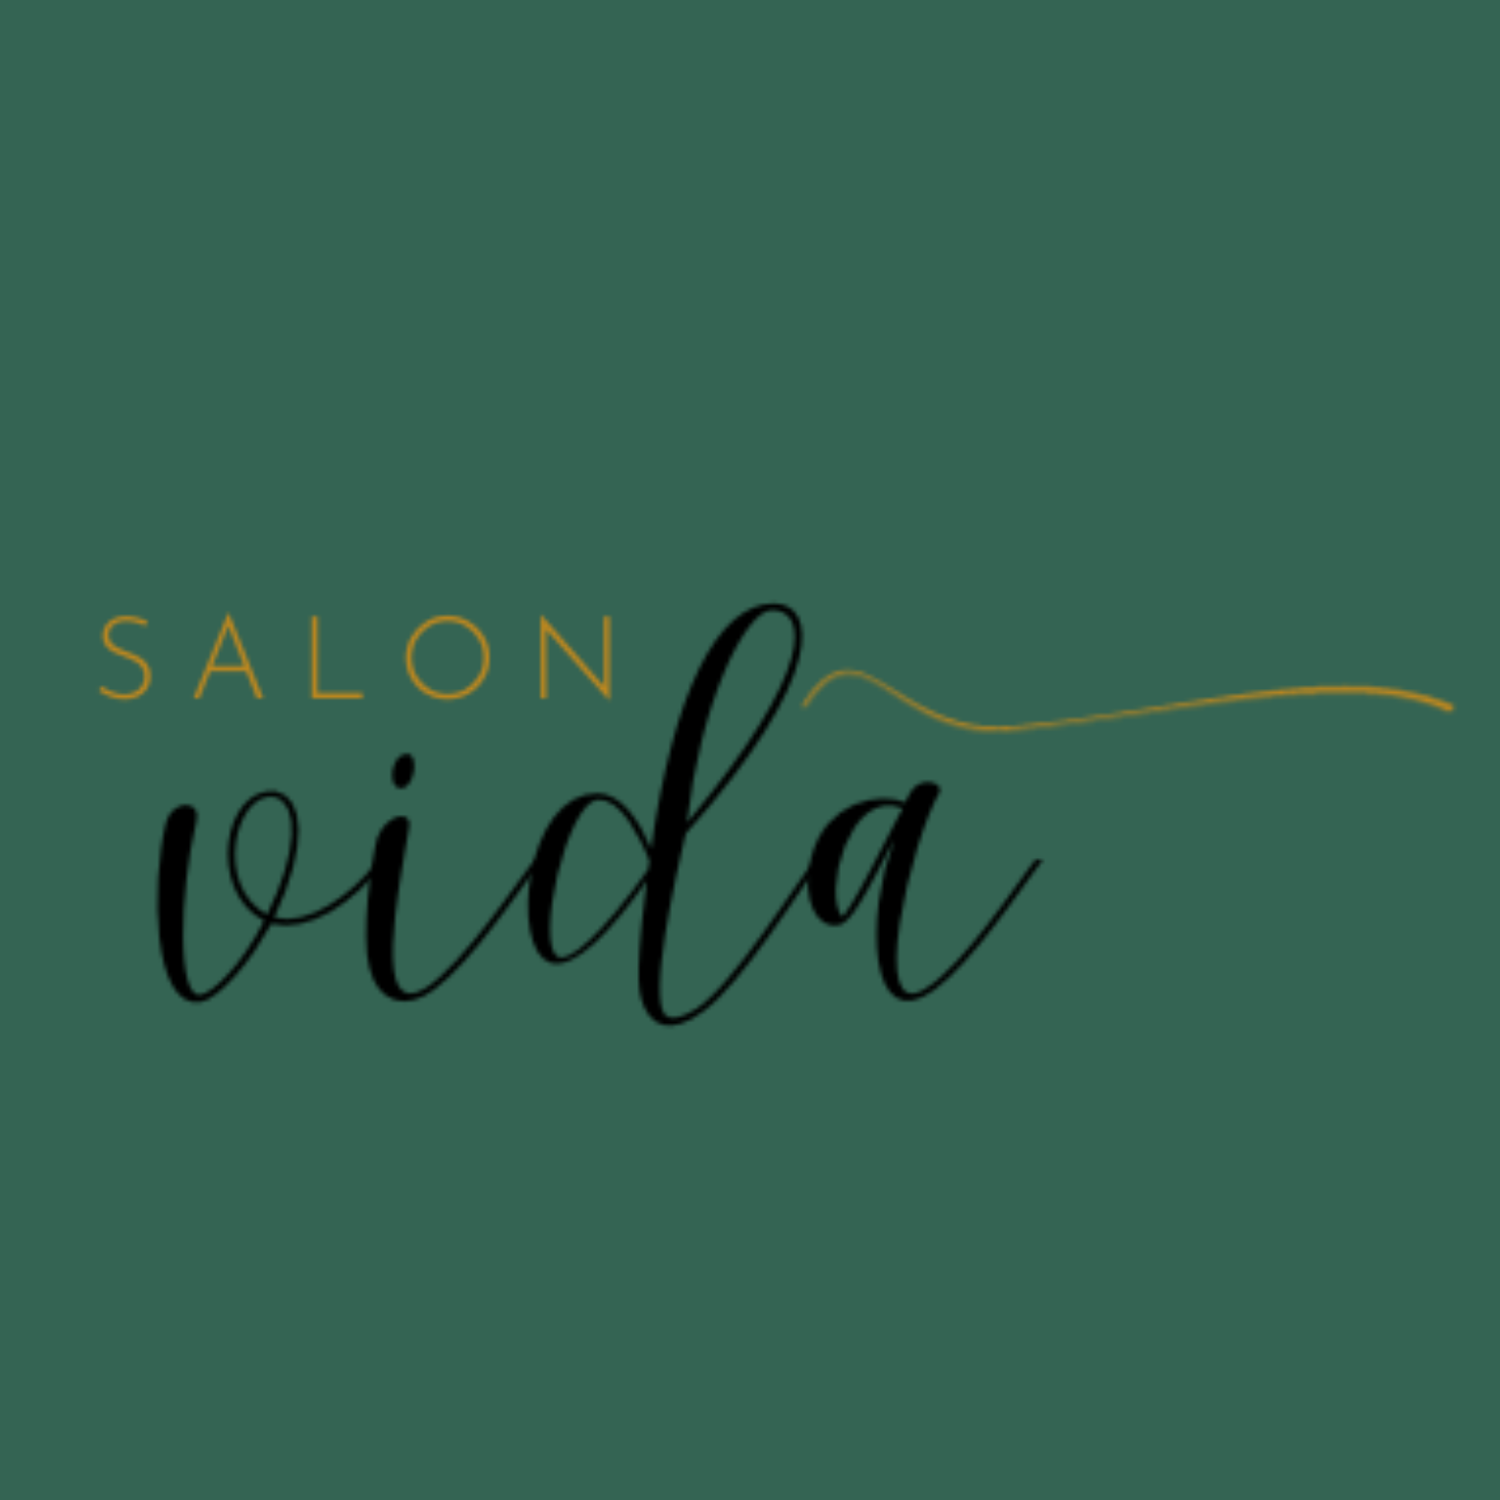 Salon Vida | Studio City Hair Salon